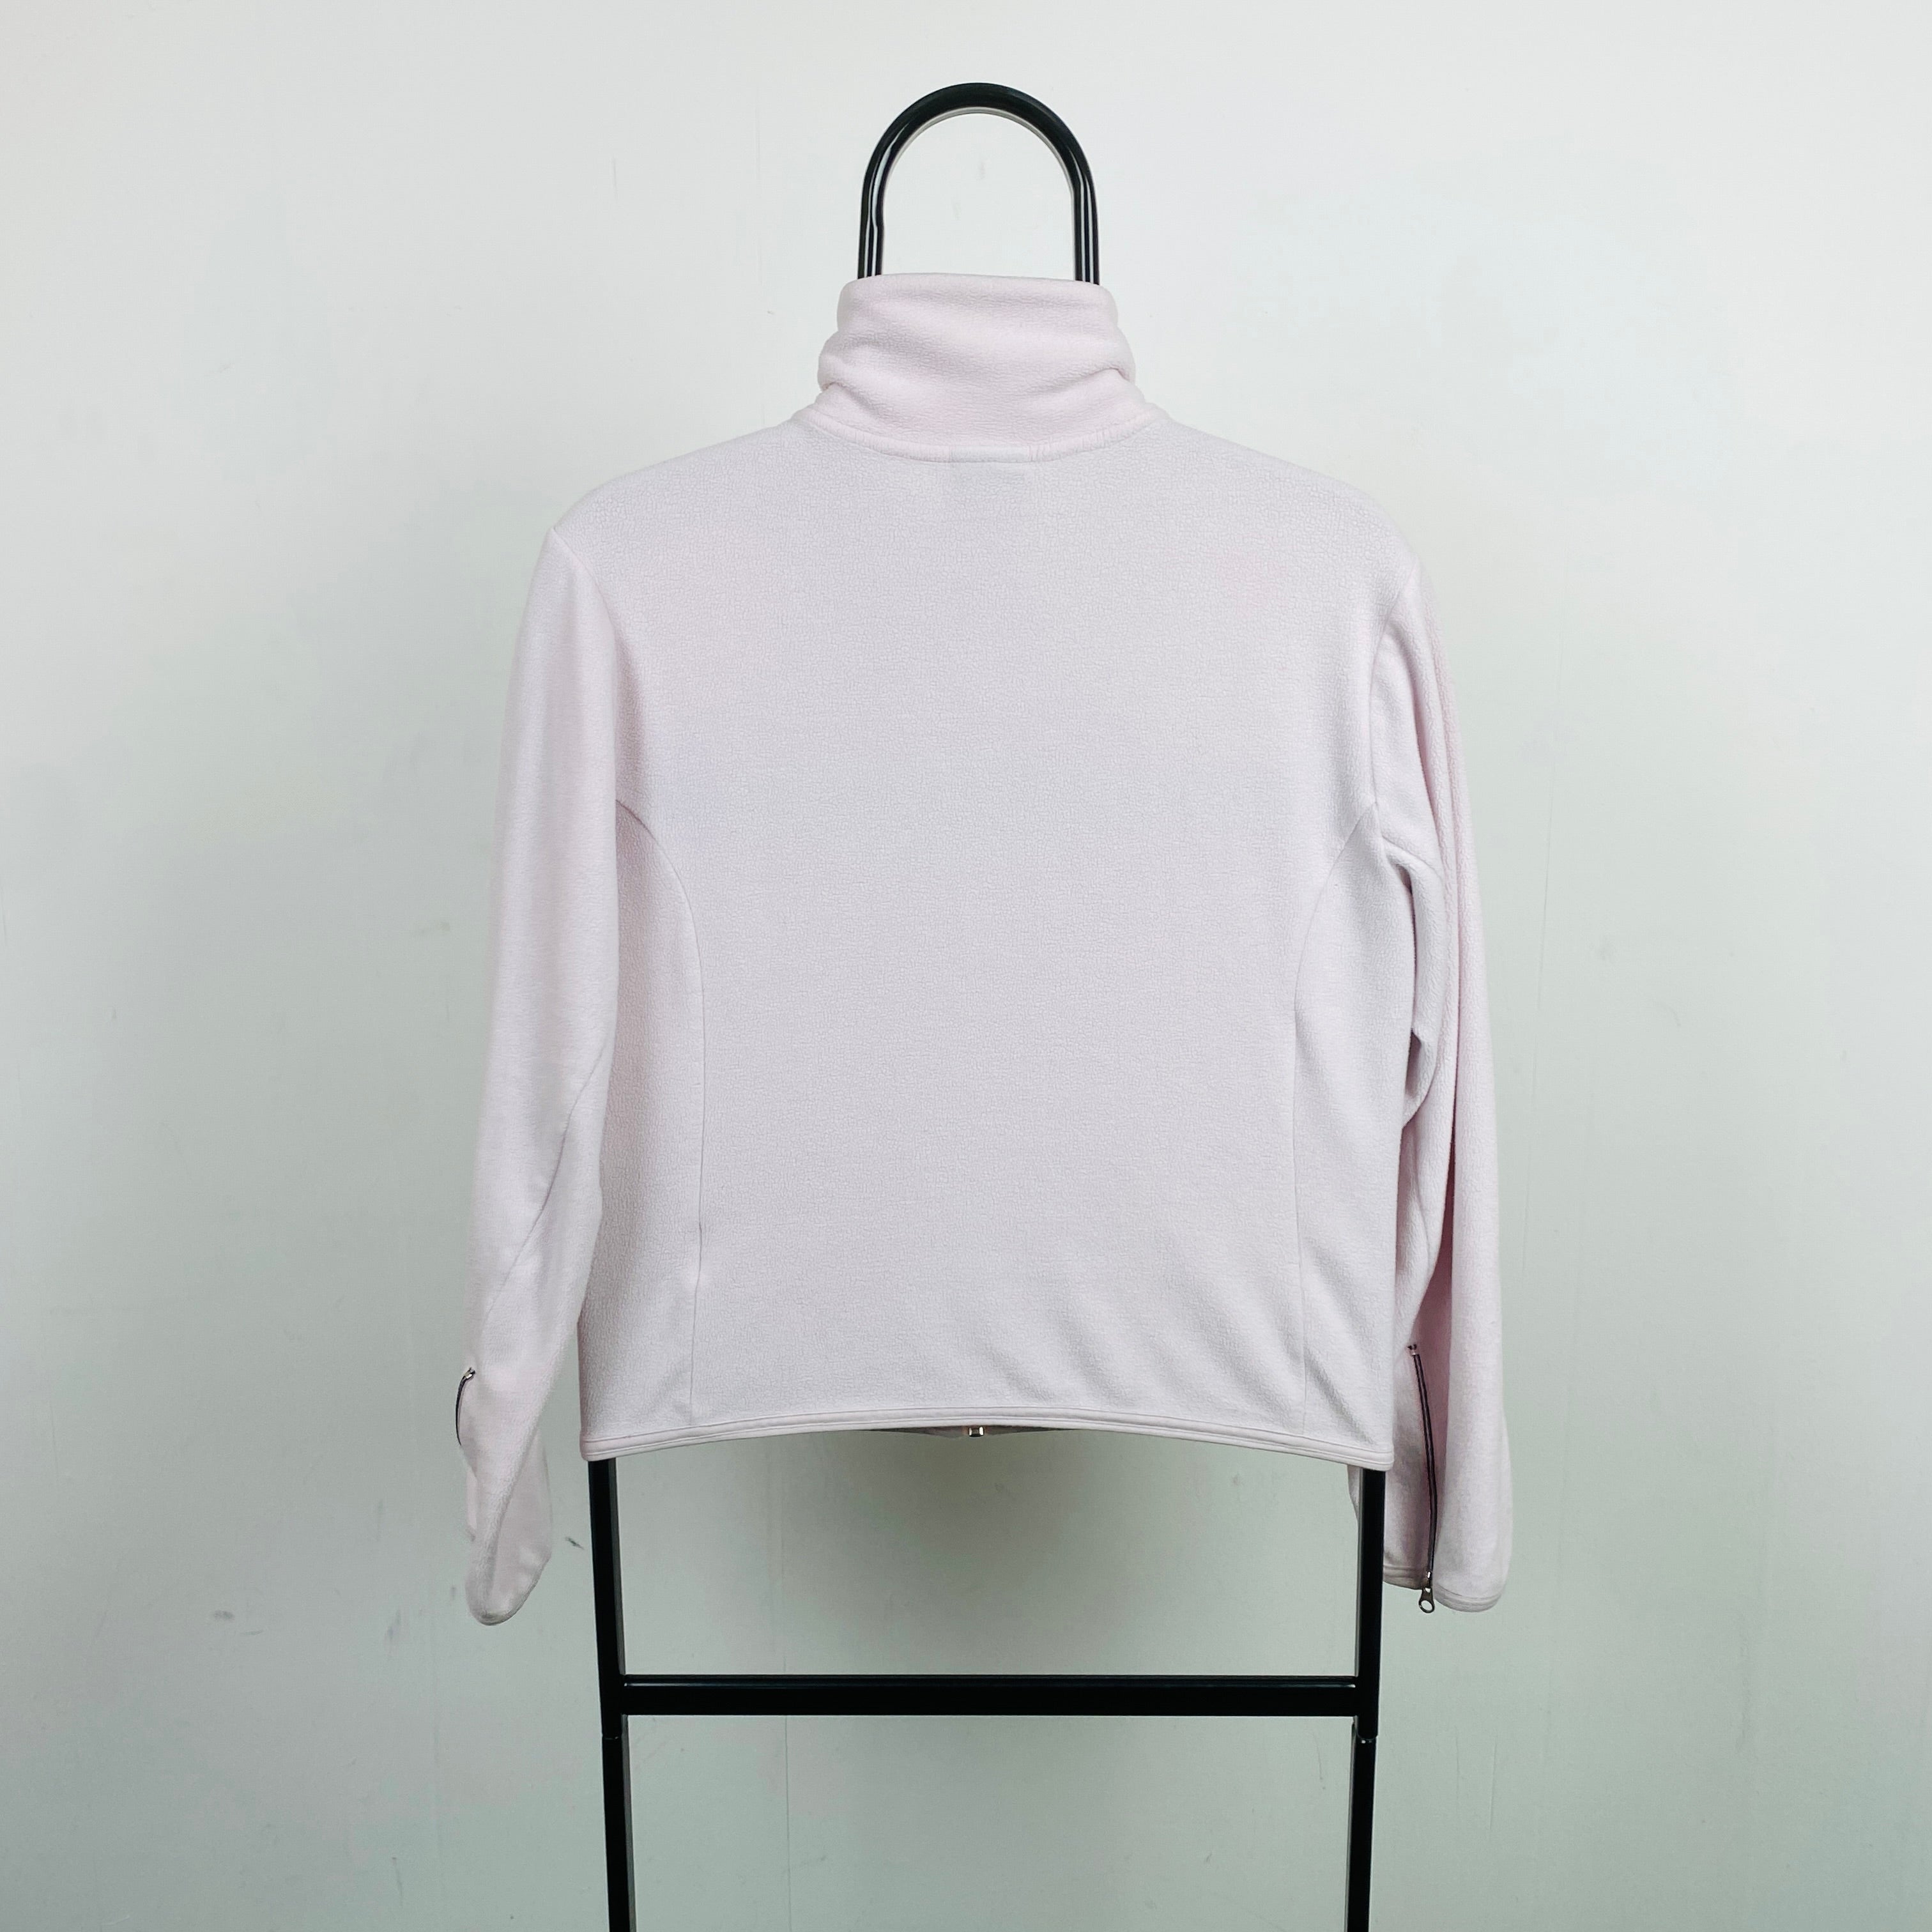 00s Nike Zip Fleece Sweatshirt Pink Womens Large